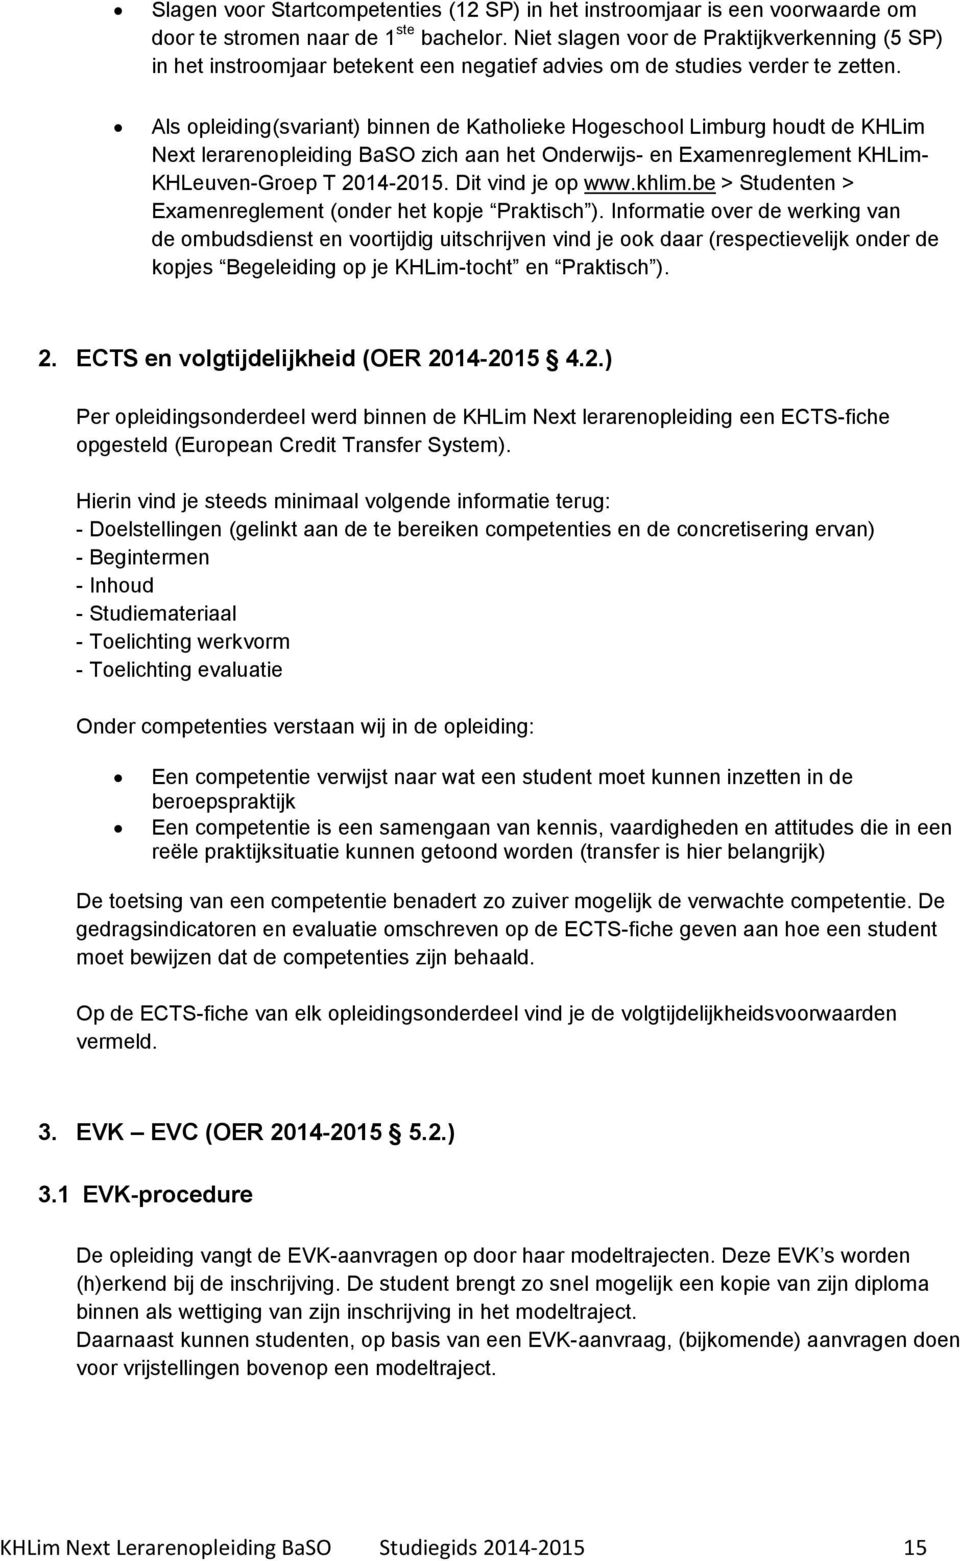 Als opleiding(svariant) binnen de Katholieke Hogeschool Limburg houdt de KHLim Next lerarenopleiding BaSO zich aan het Onderwijs- en Examenreglement KHLim- KHLeuven-Groep T 2014-2015.